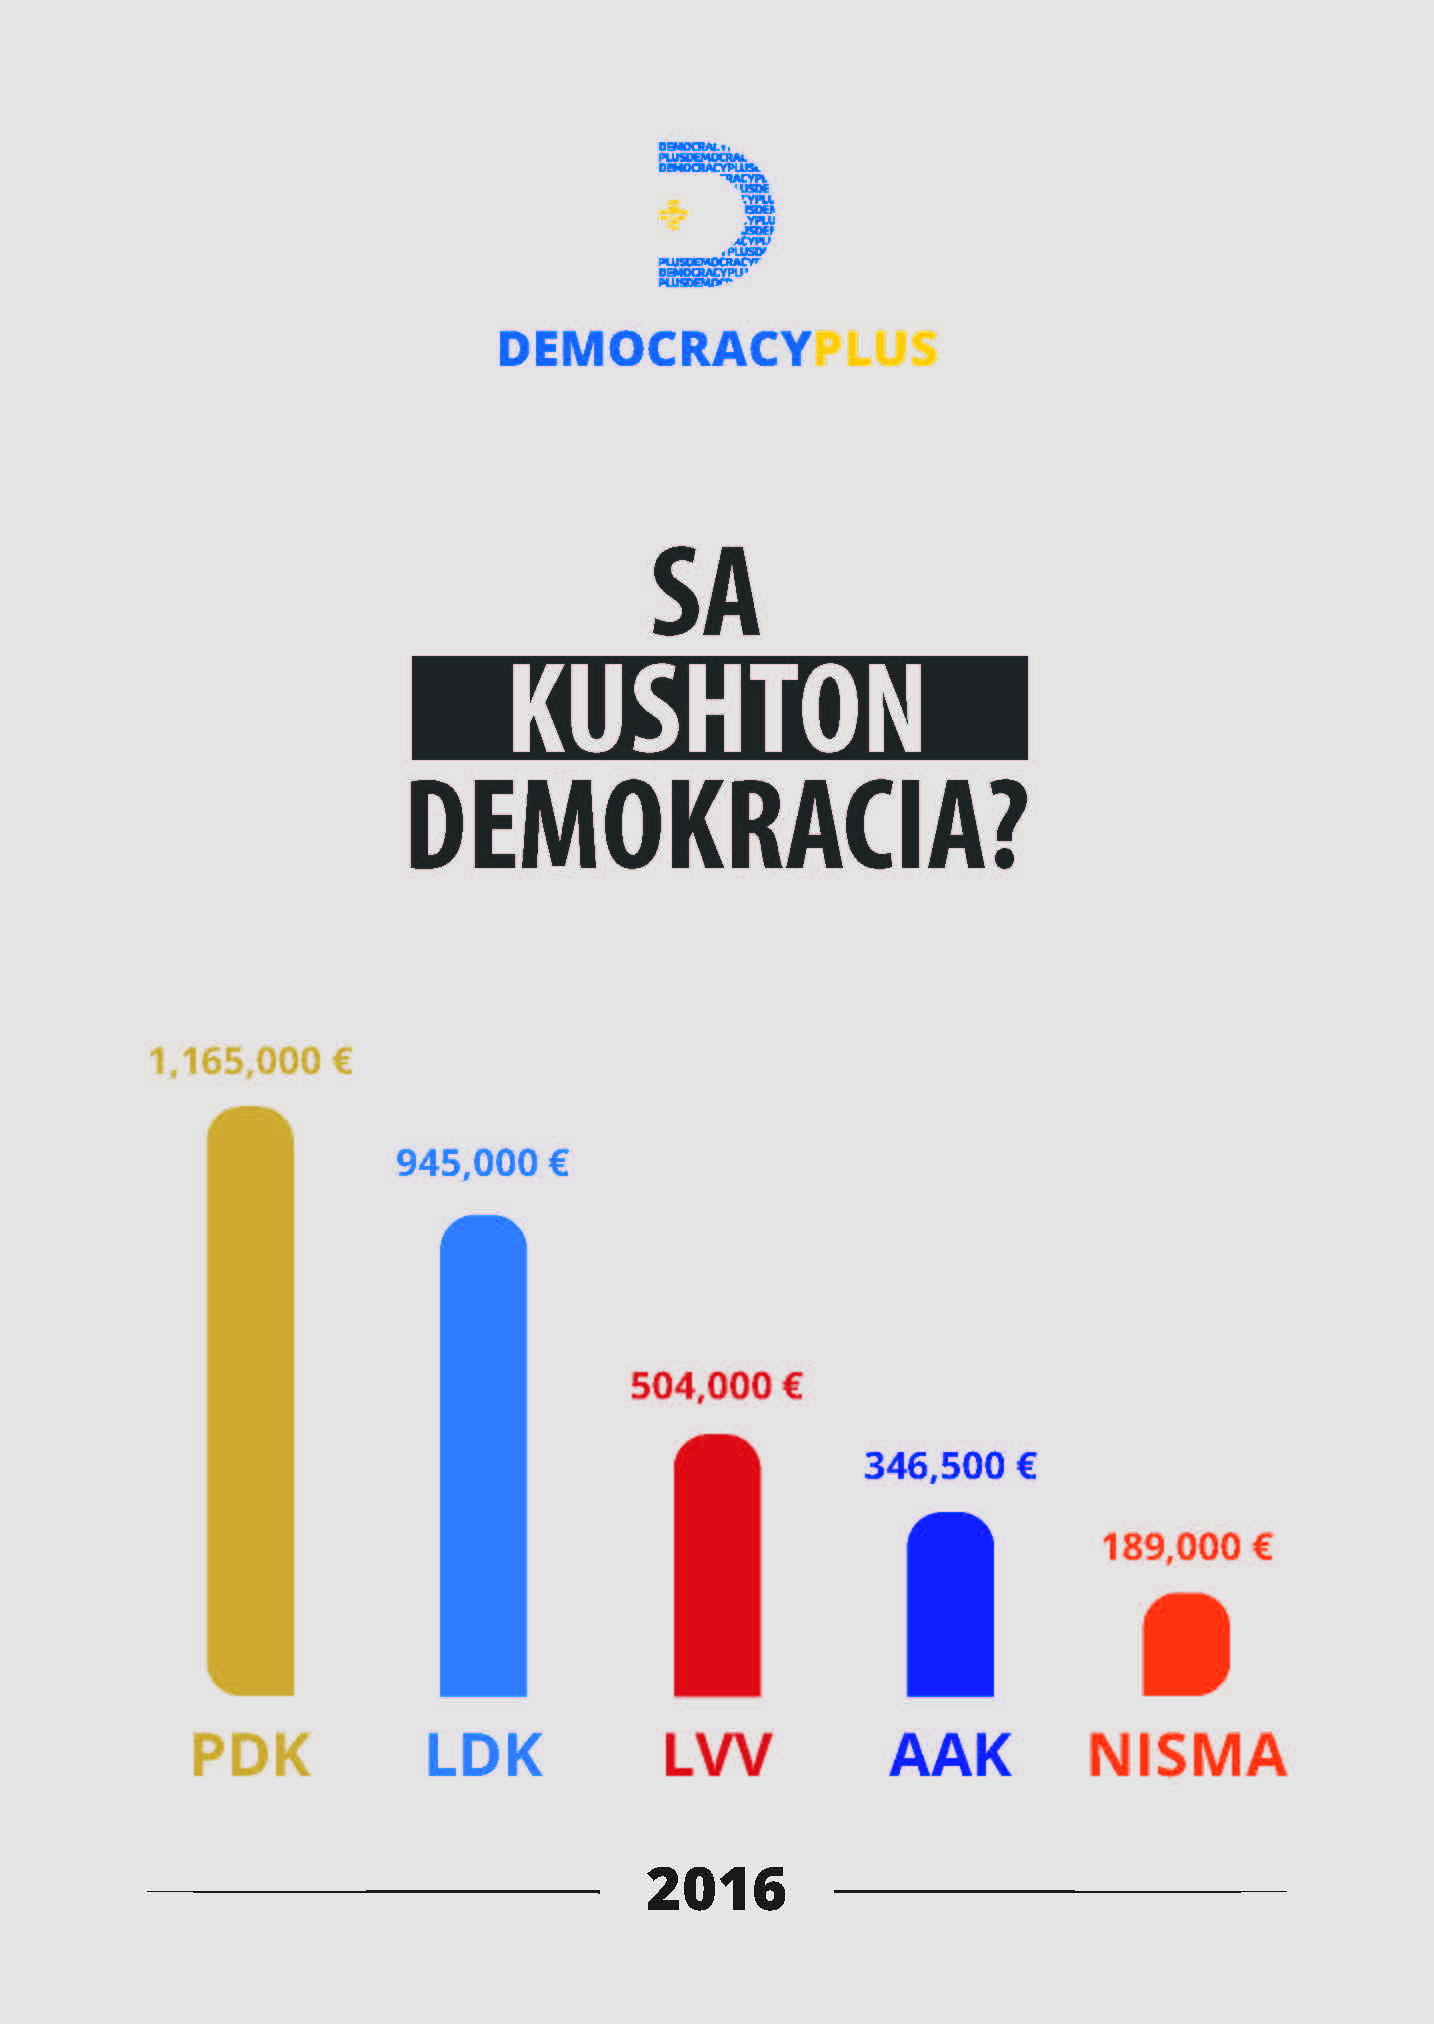 Sa kushton demokracia?